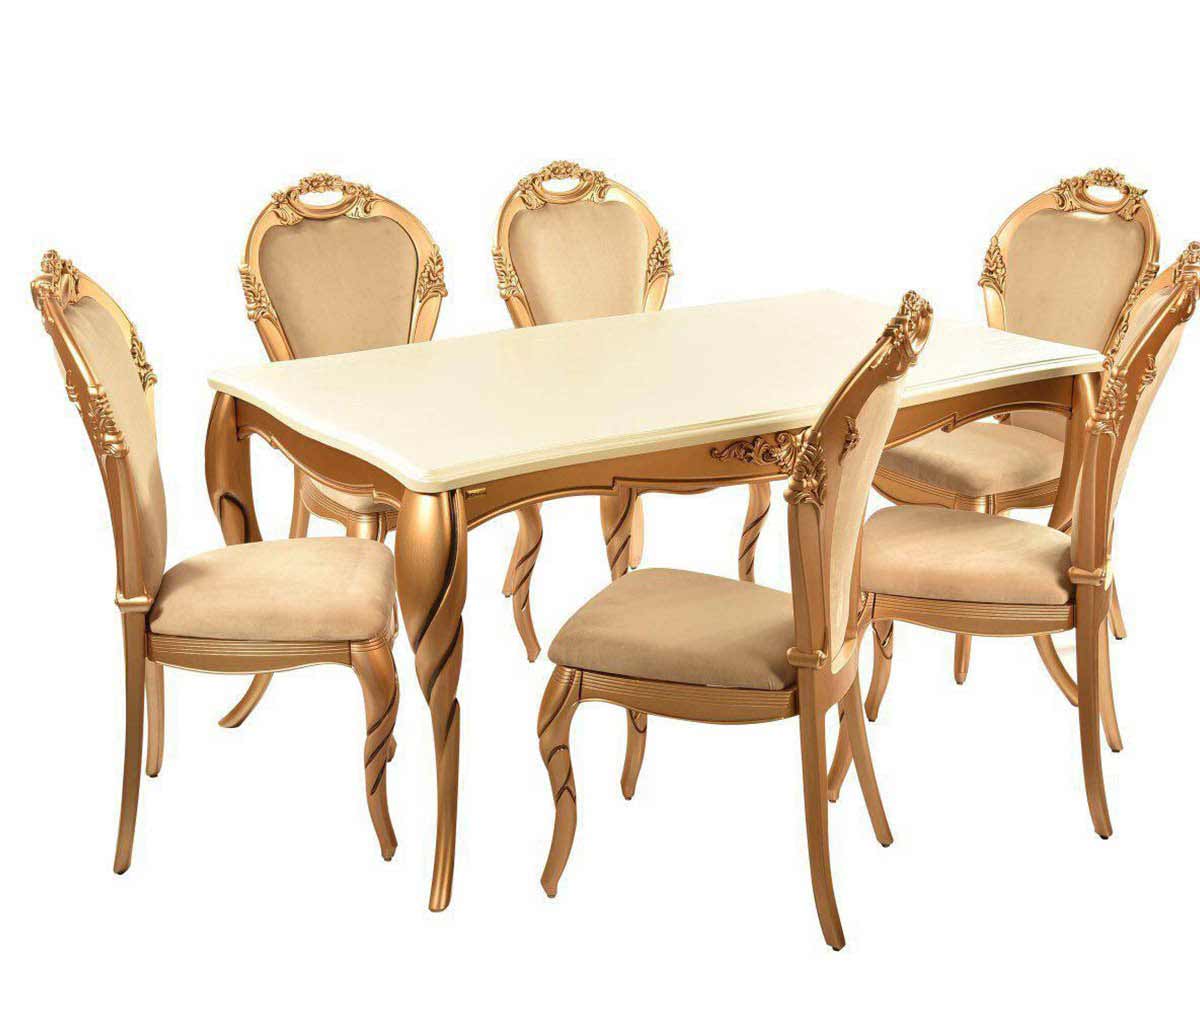 انواع میزهای رستورانی - میز پایه چوبی - معرفی 10 مدل میز رستورانی پرفروش